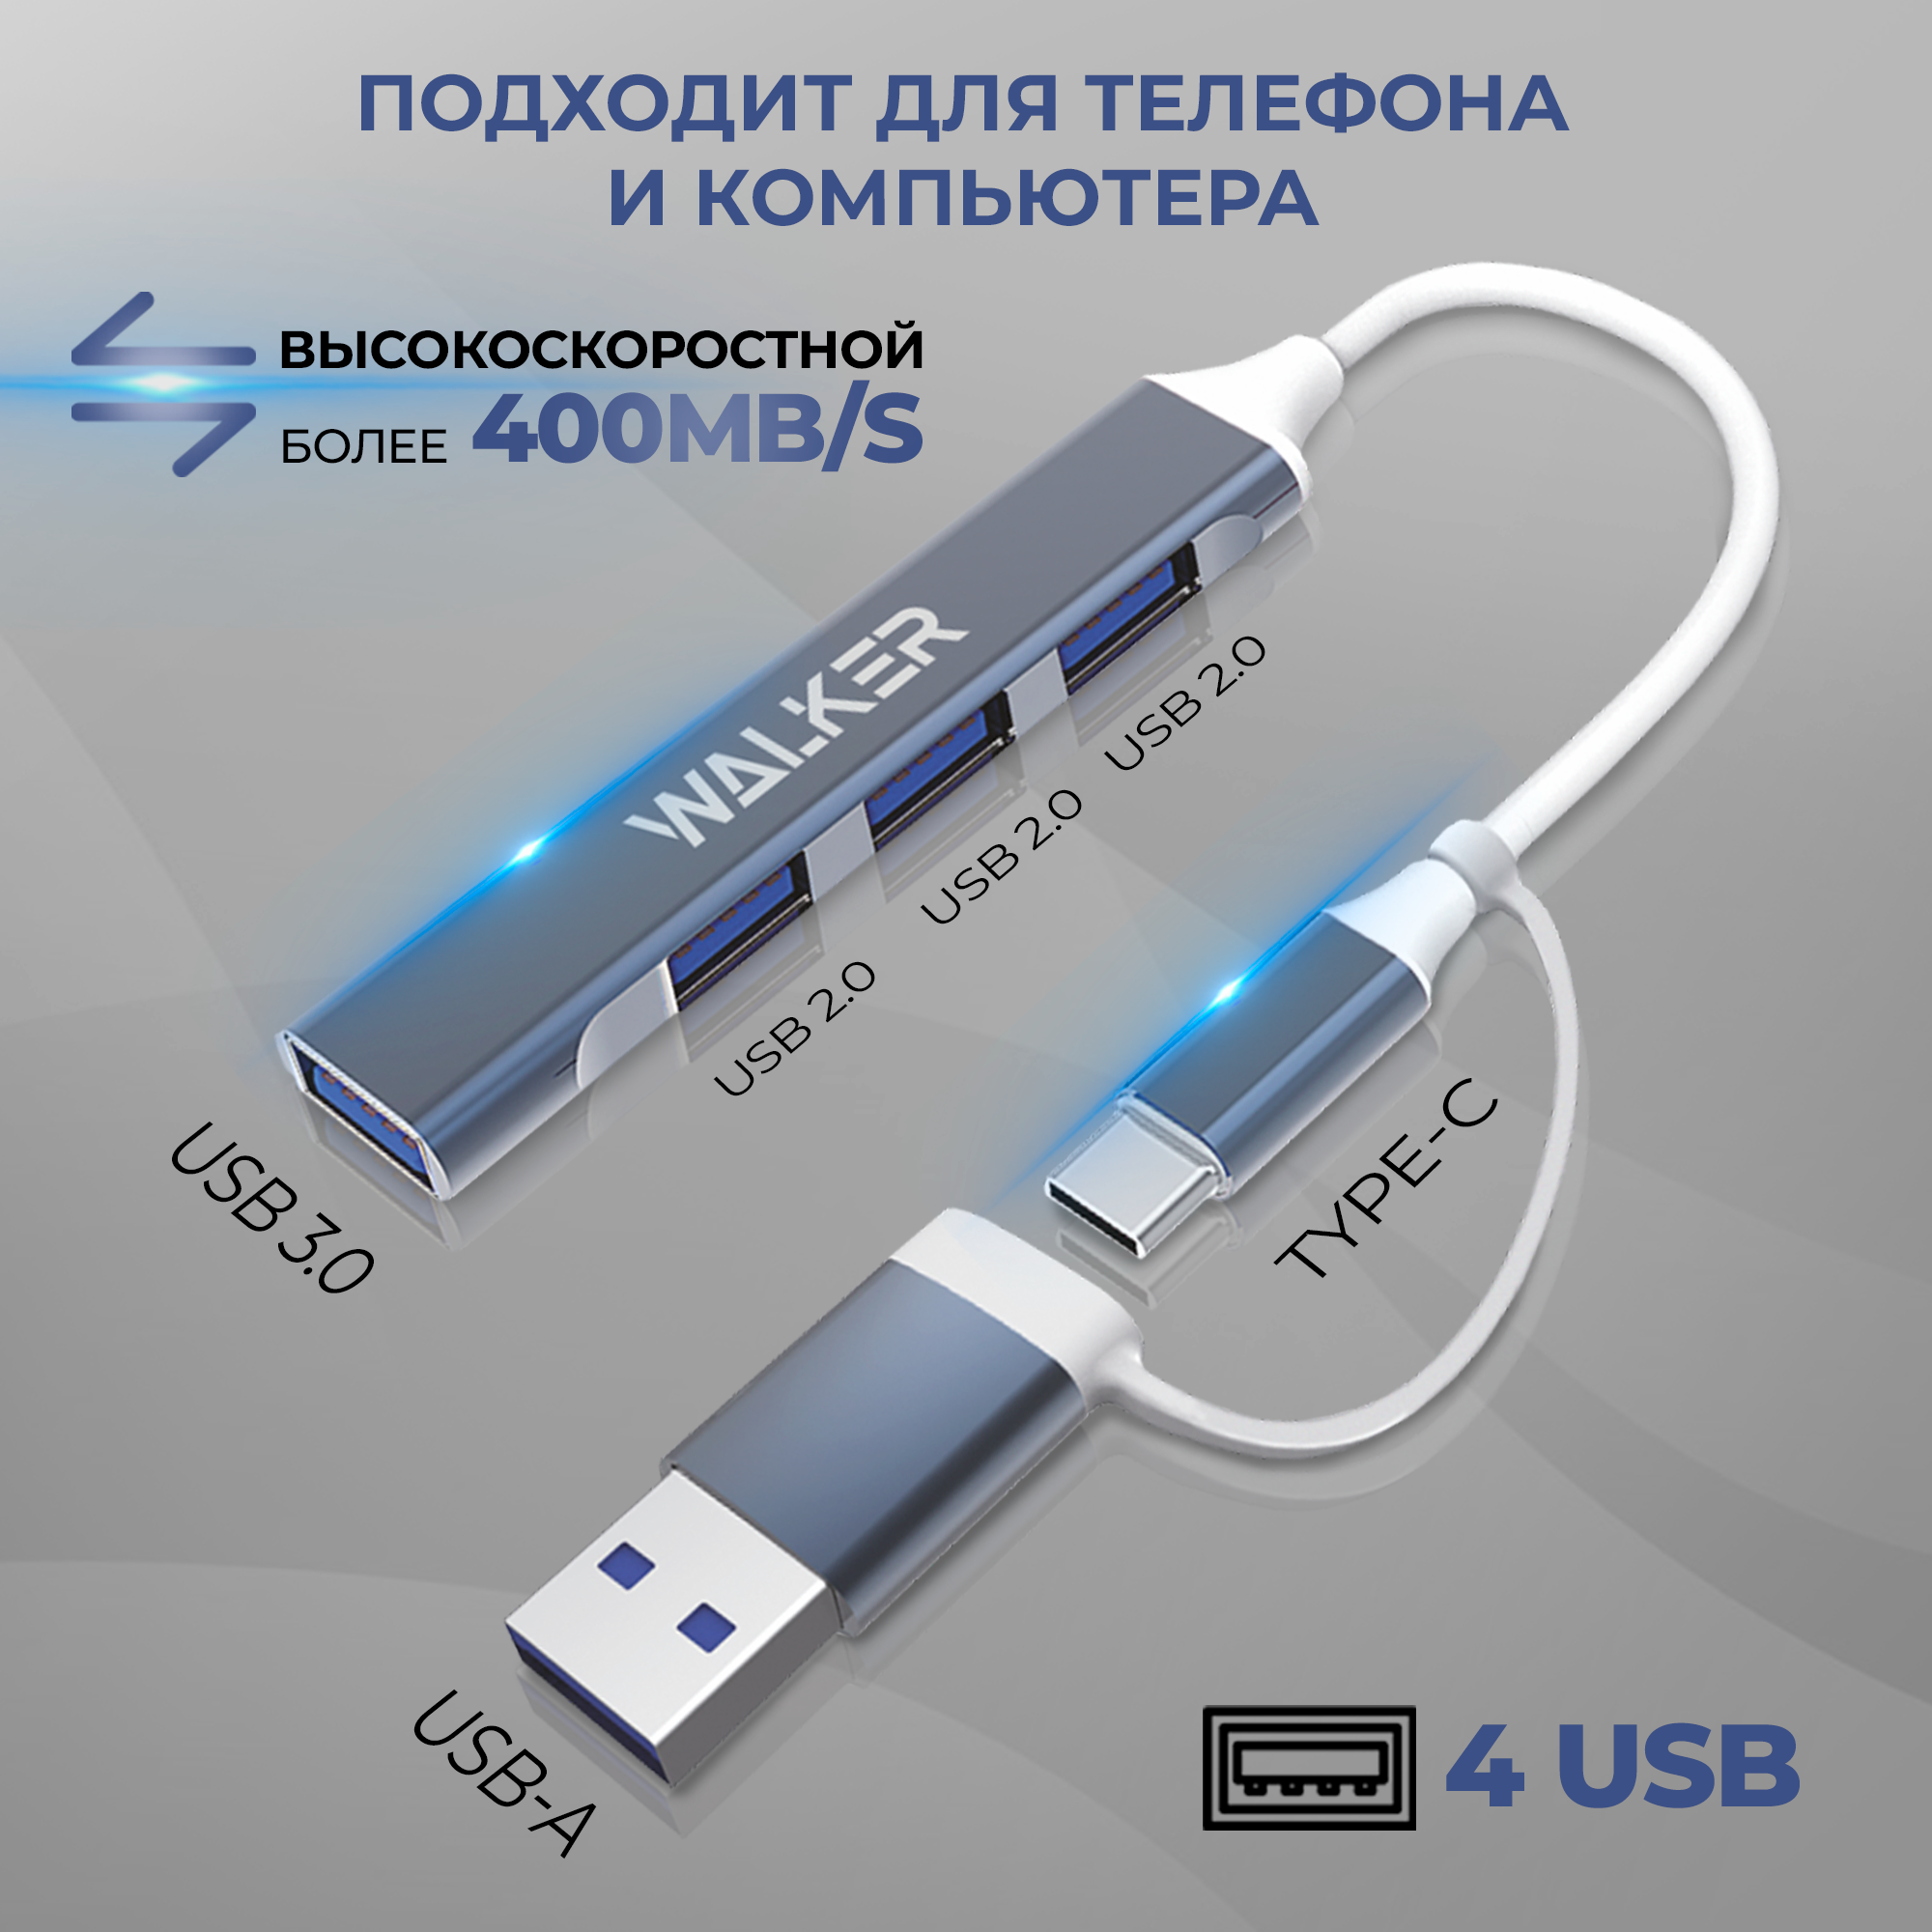 Разветвитель USB HUB на 4 порта WALKER HUB11 белый кабель для ноутбука удлинитель для компьютера провод для юсб